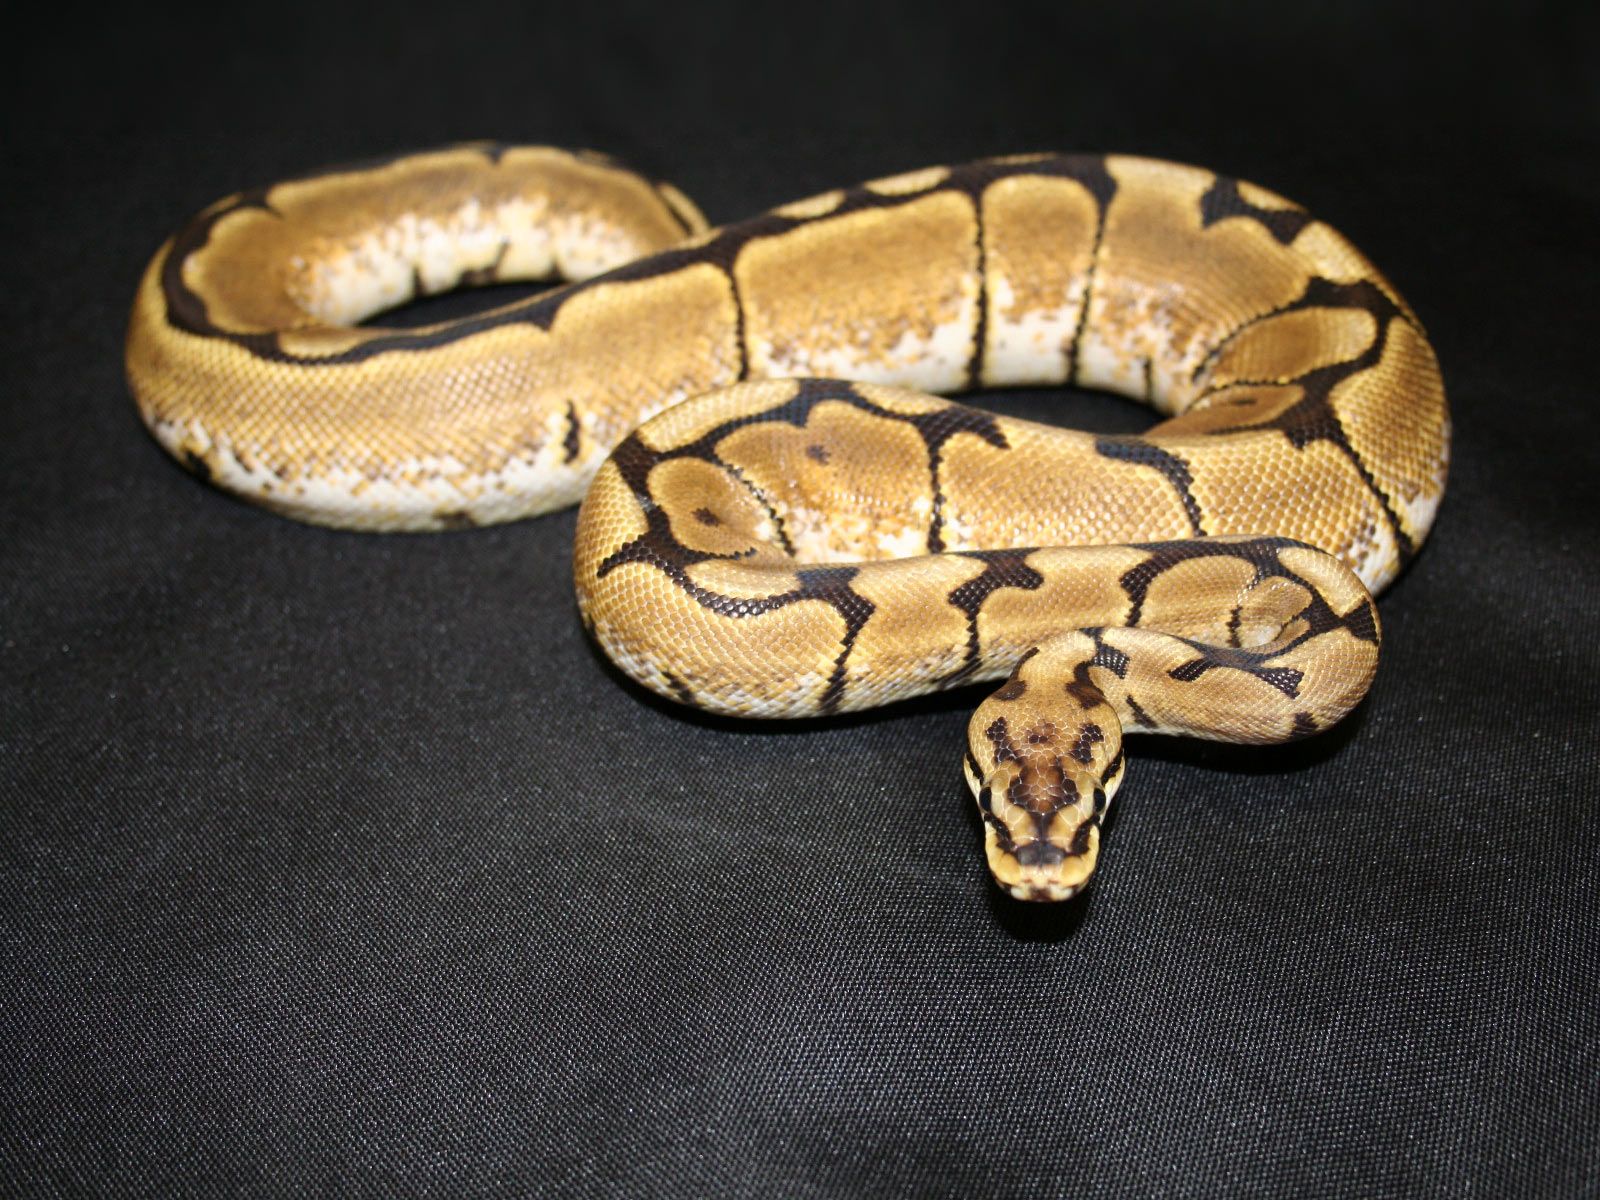 Ball Python Royal Python Snake < Animals < Life < Desktop Wallpaper